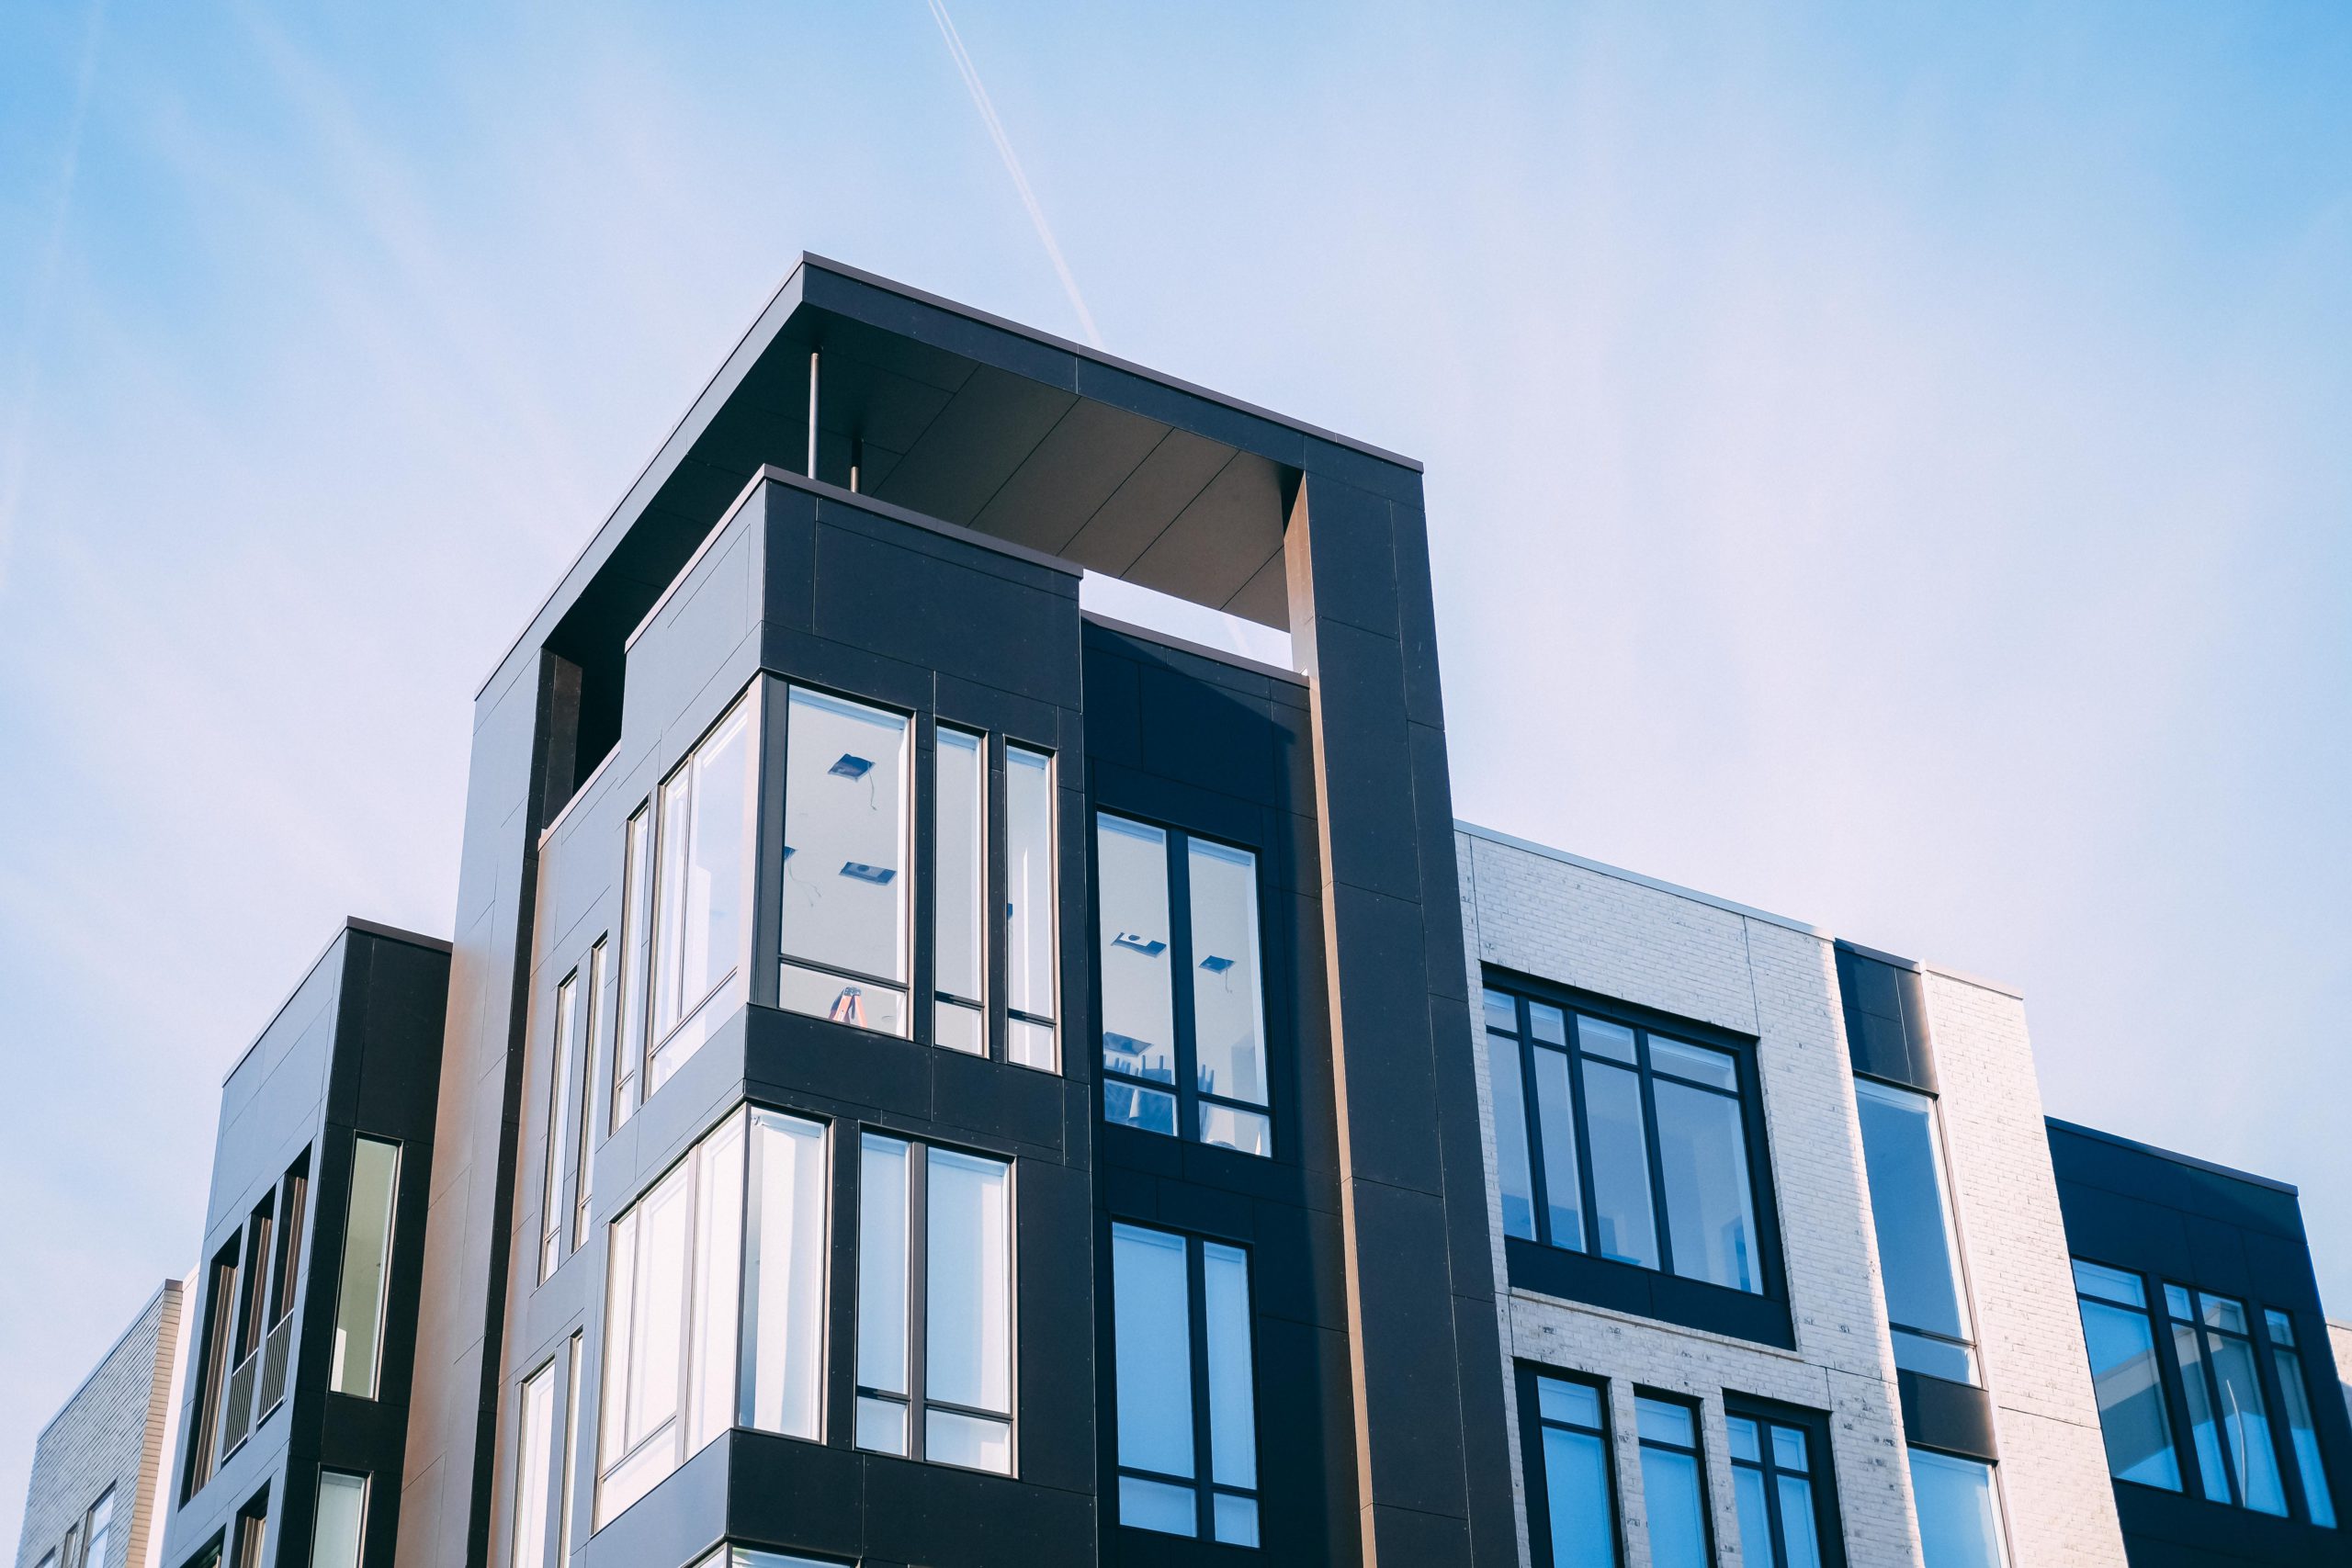 Compra apartamento pequeno: imagem da fachada de um prédio de apartamentos com janelas de vidro